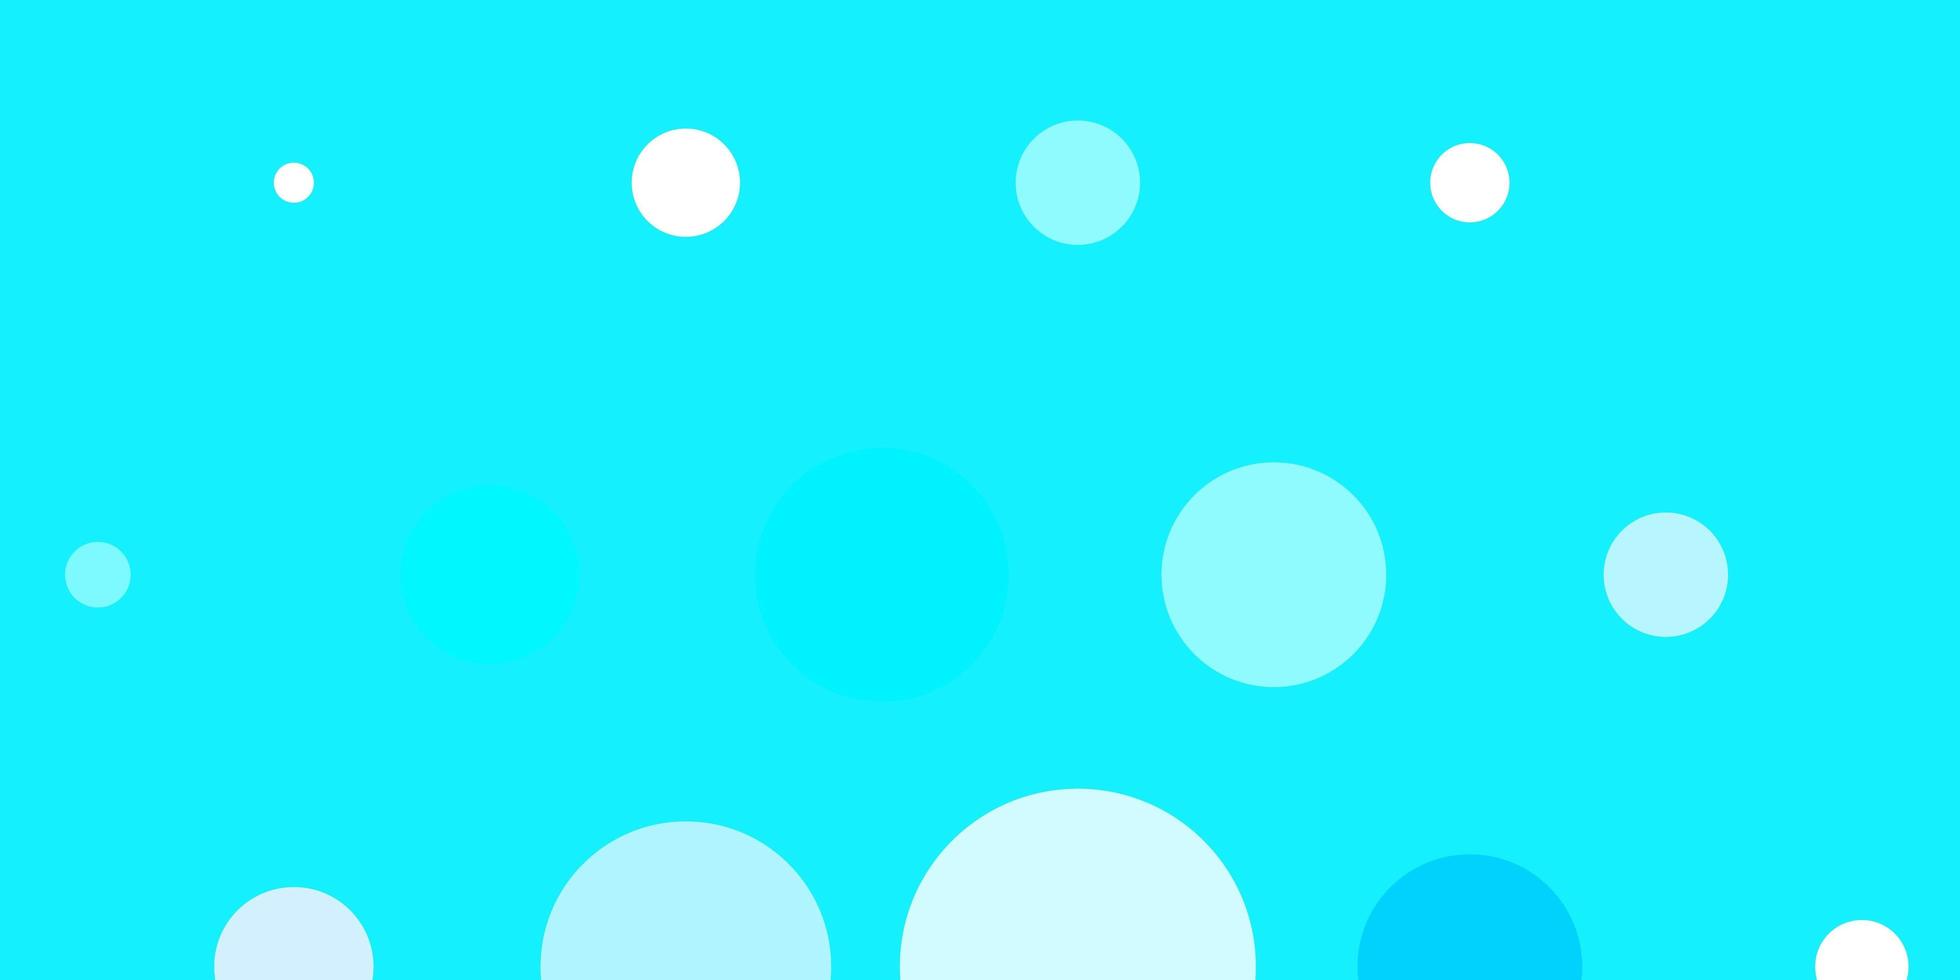 Fondo de vector azul rosa claro con puntos brillo ilustración abstracta con diseño de gotas de colores para sus comerciales